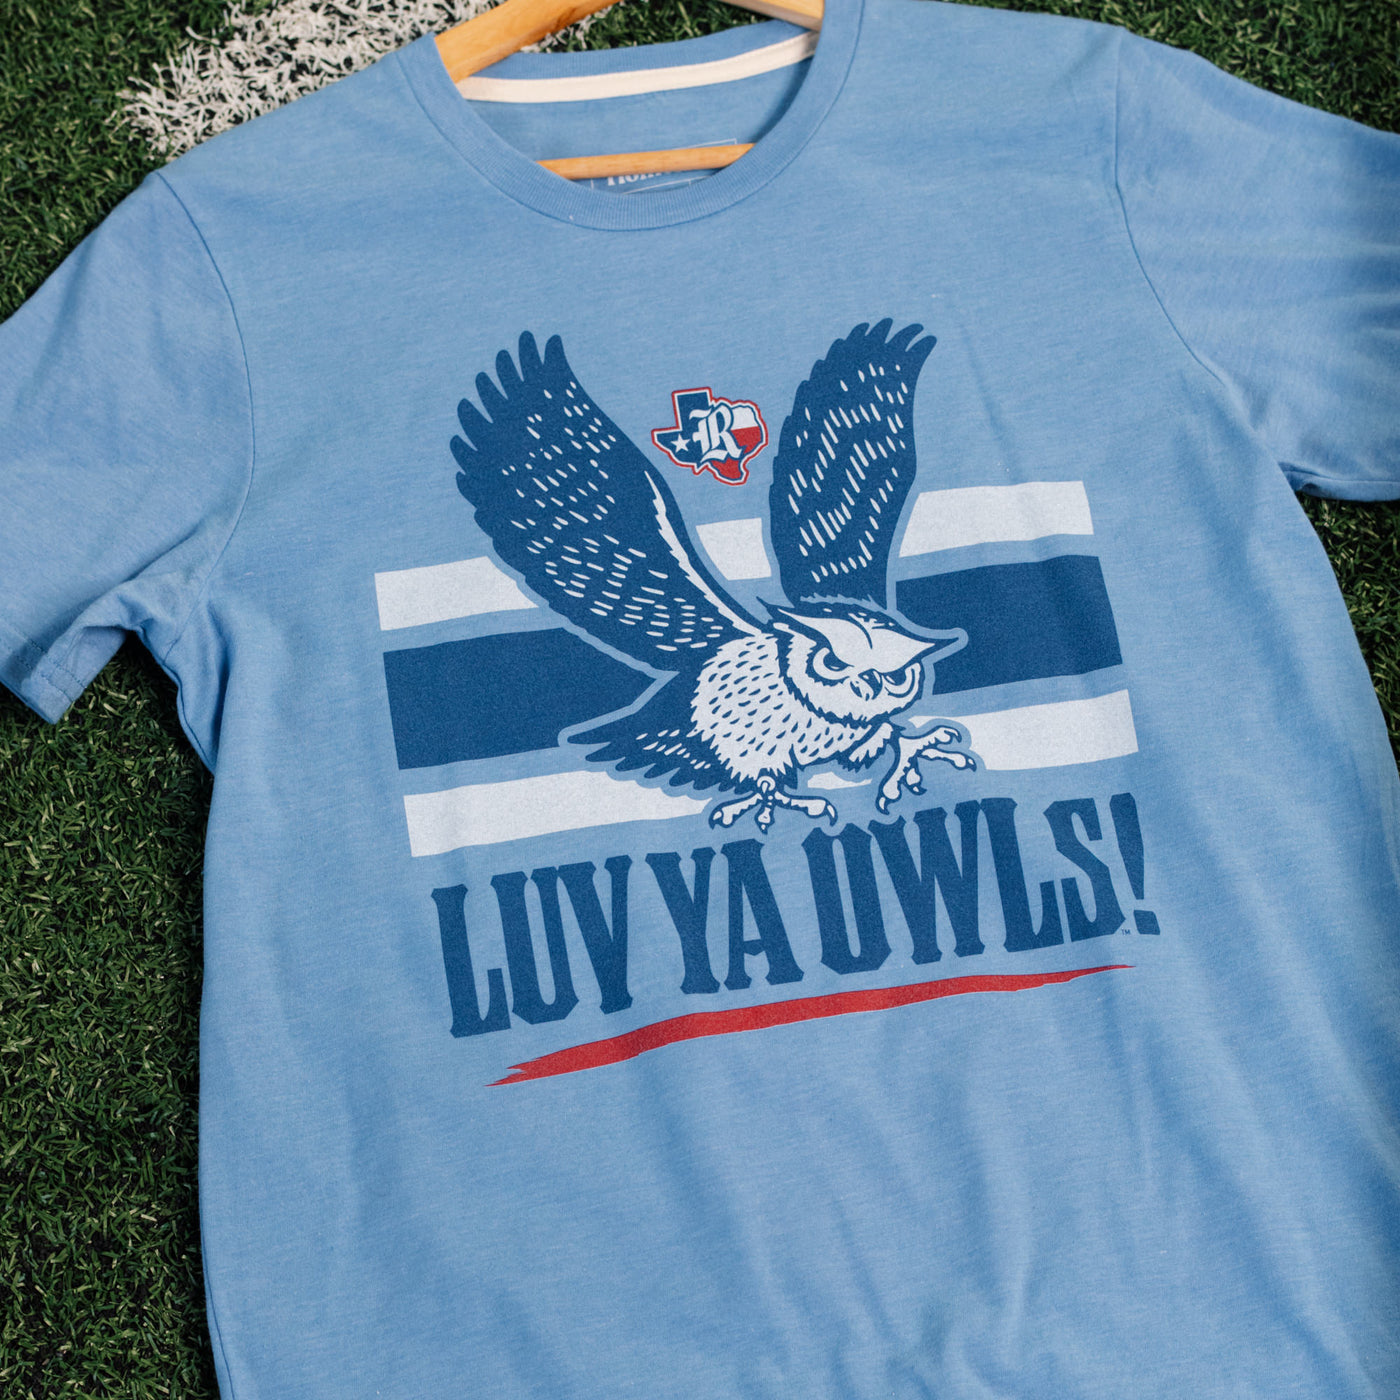 Rice Vintage "Luv Ya Owls!" Football Tee